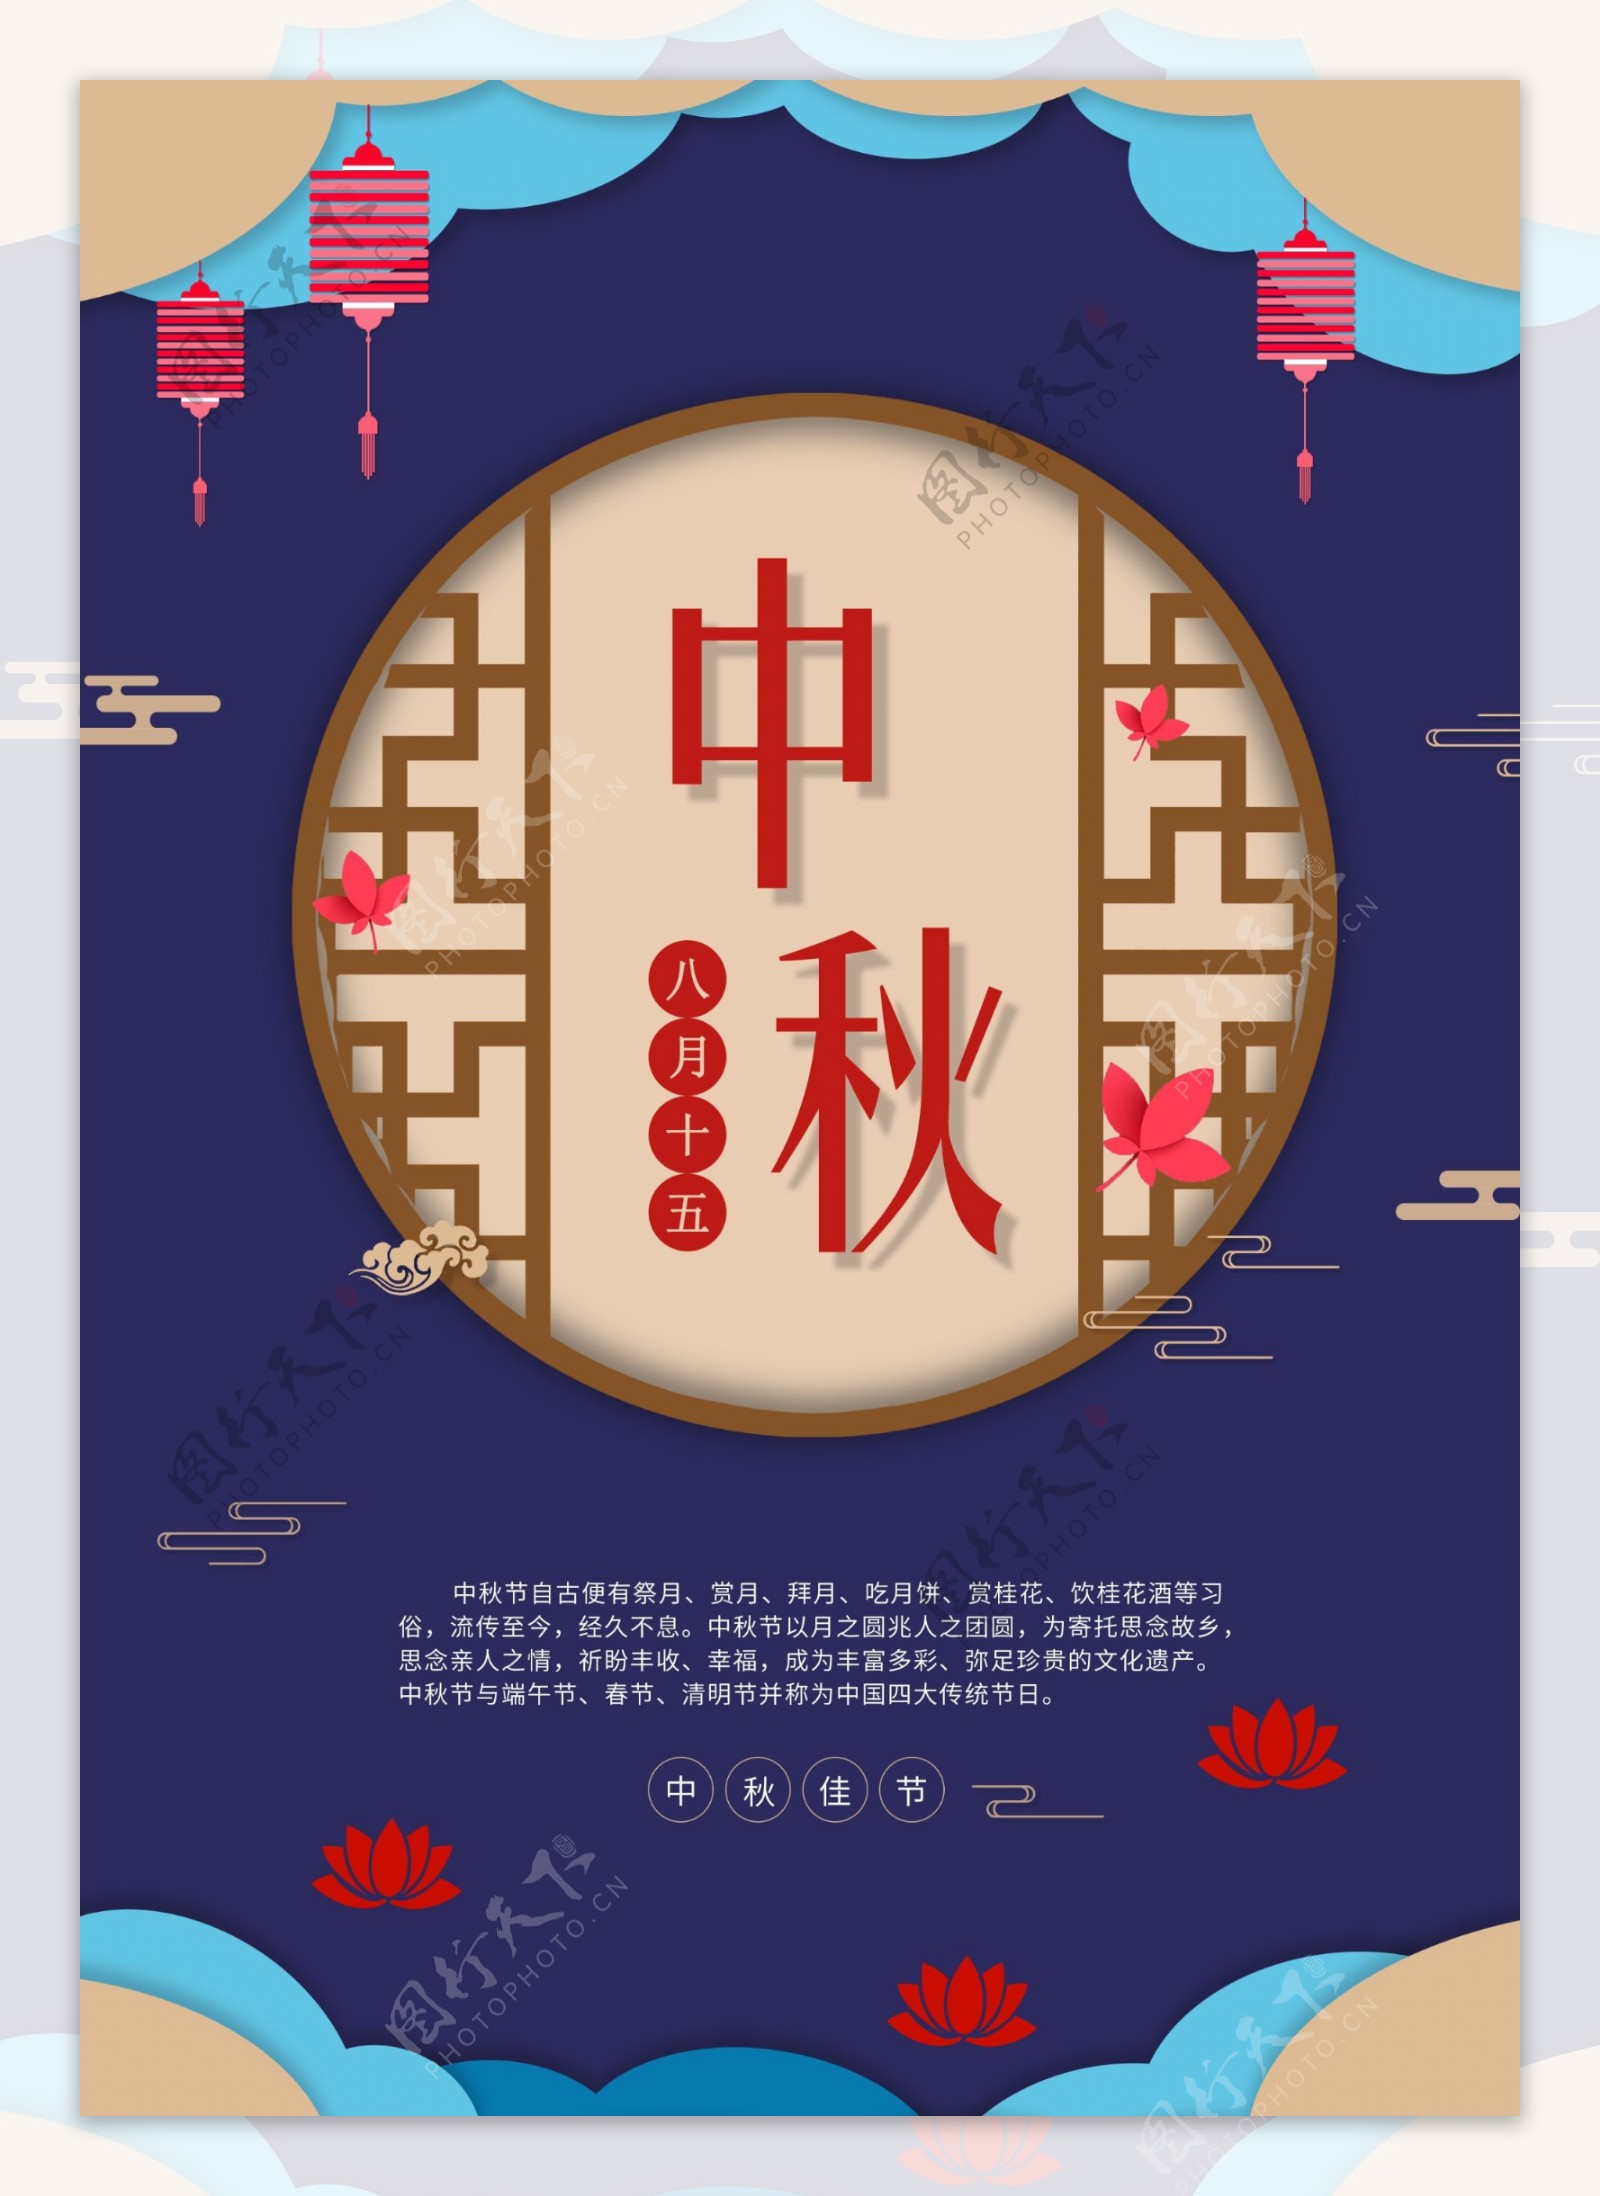 中秋传统节日海报